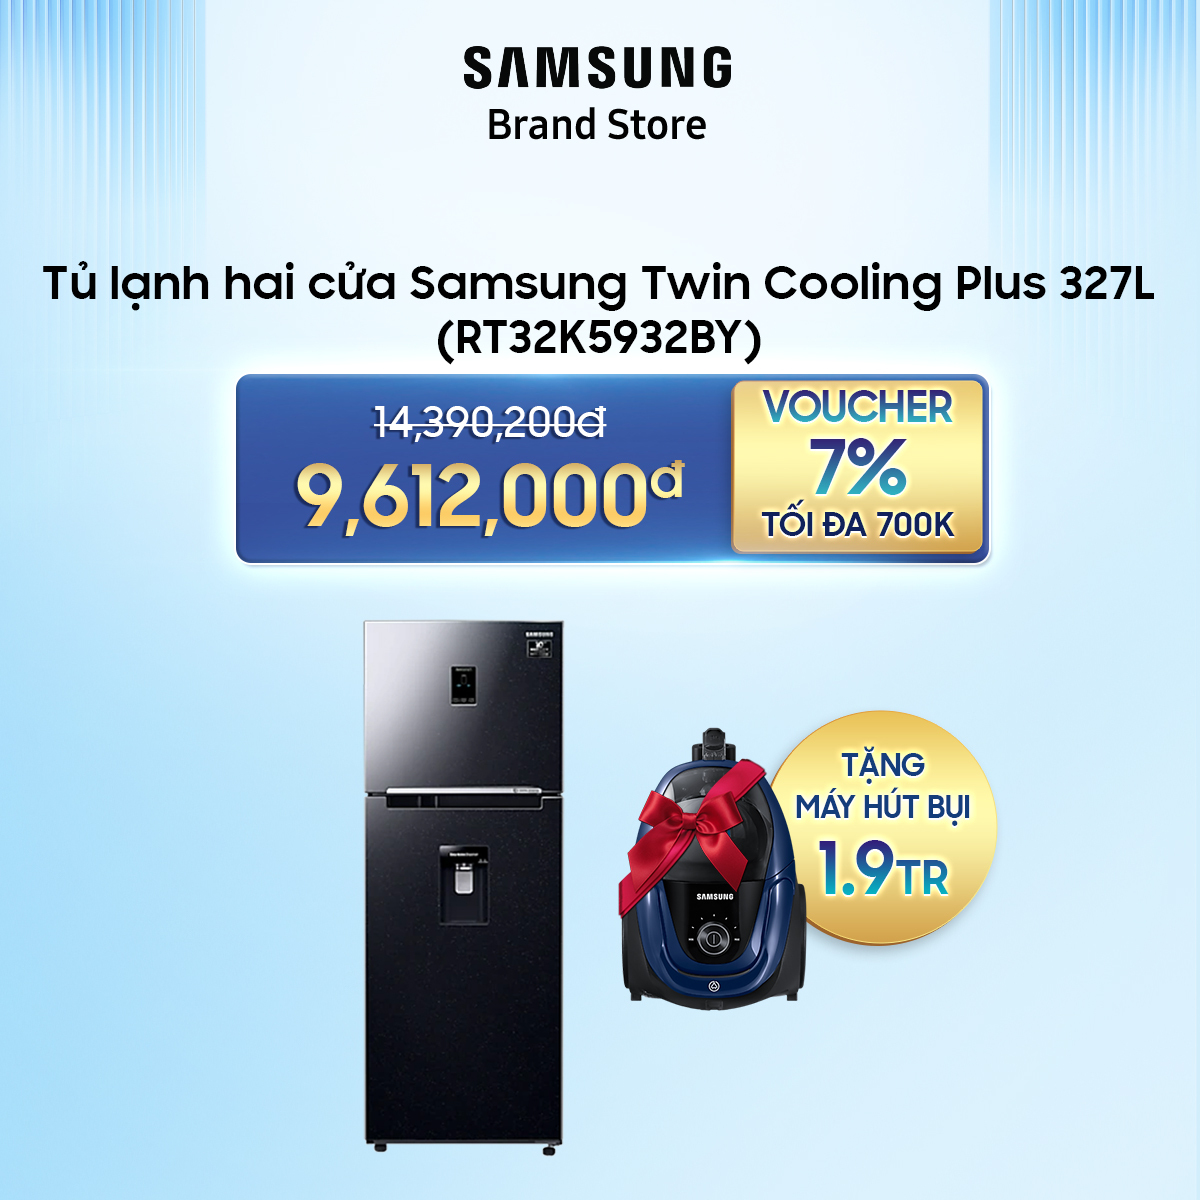 [TRẢ GÓP 0%] Tủ lạnh hai cửa Samsung Twin Cooling Plus 327L (RT32K5932BY)